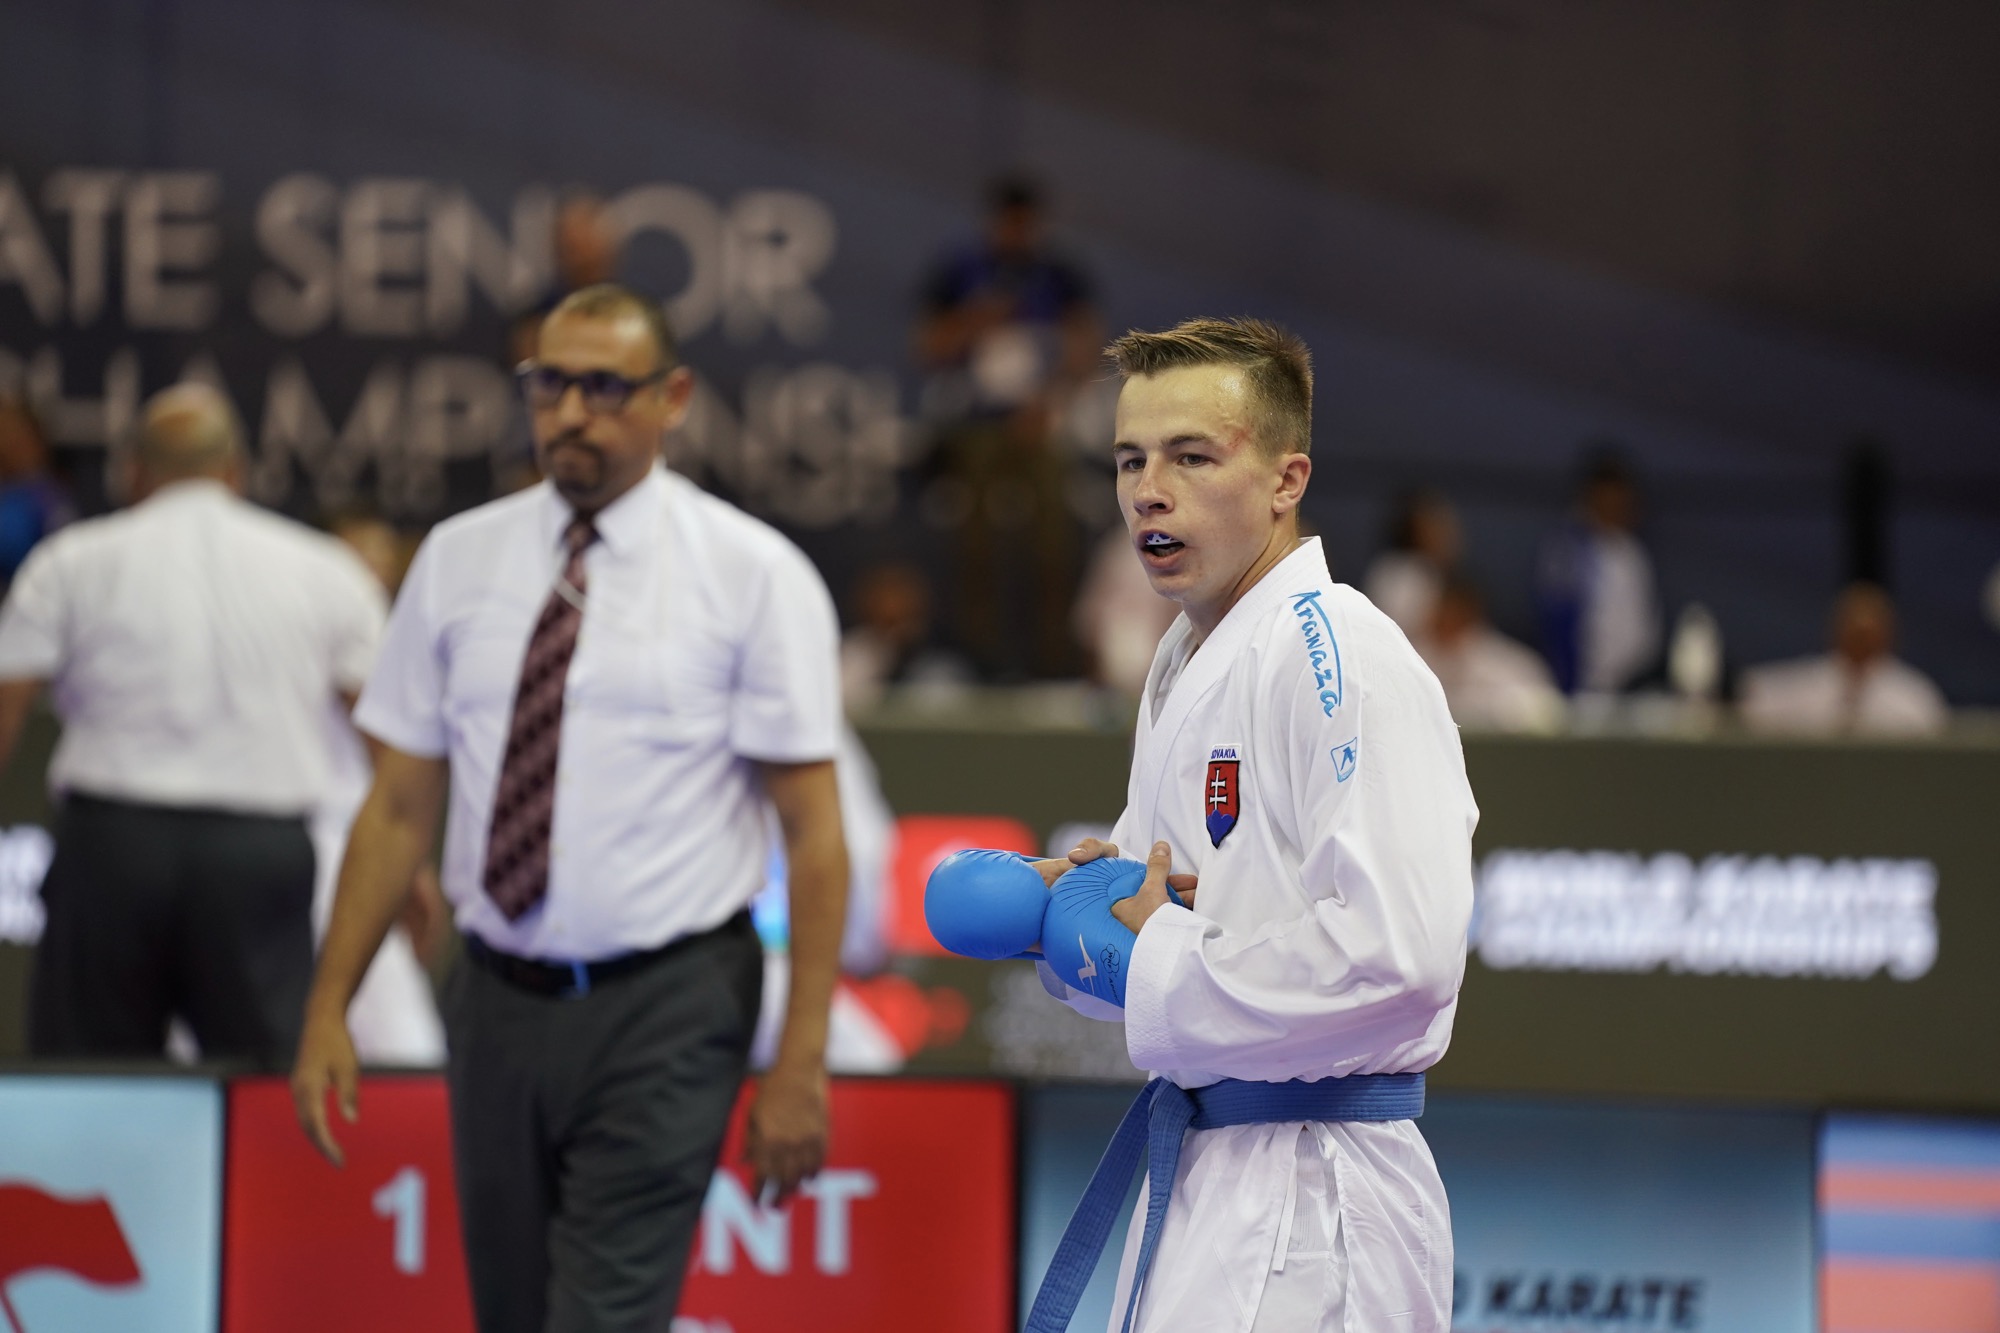 Dominik Imrich, študent NHF, sa zapísal do slovenskej karate histórie